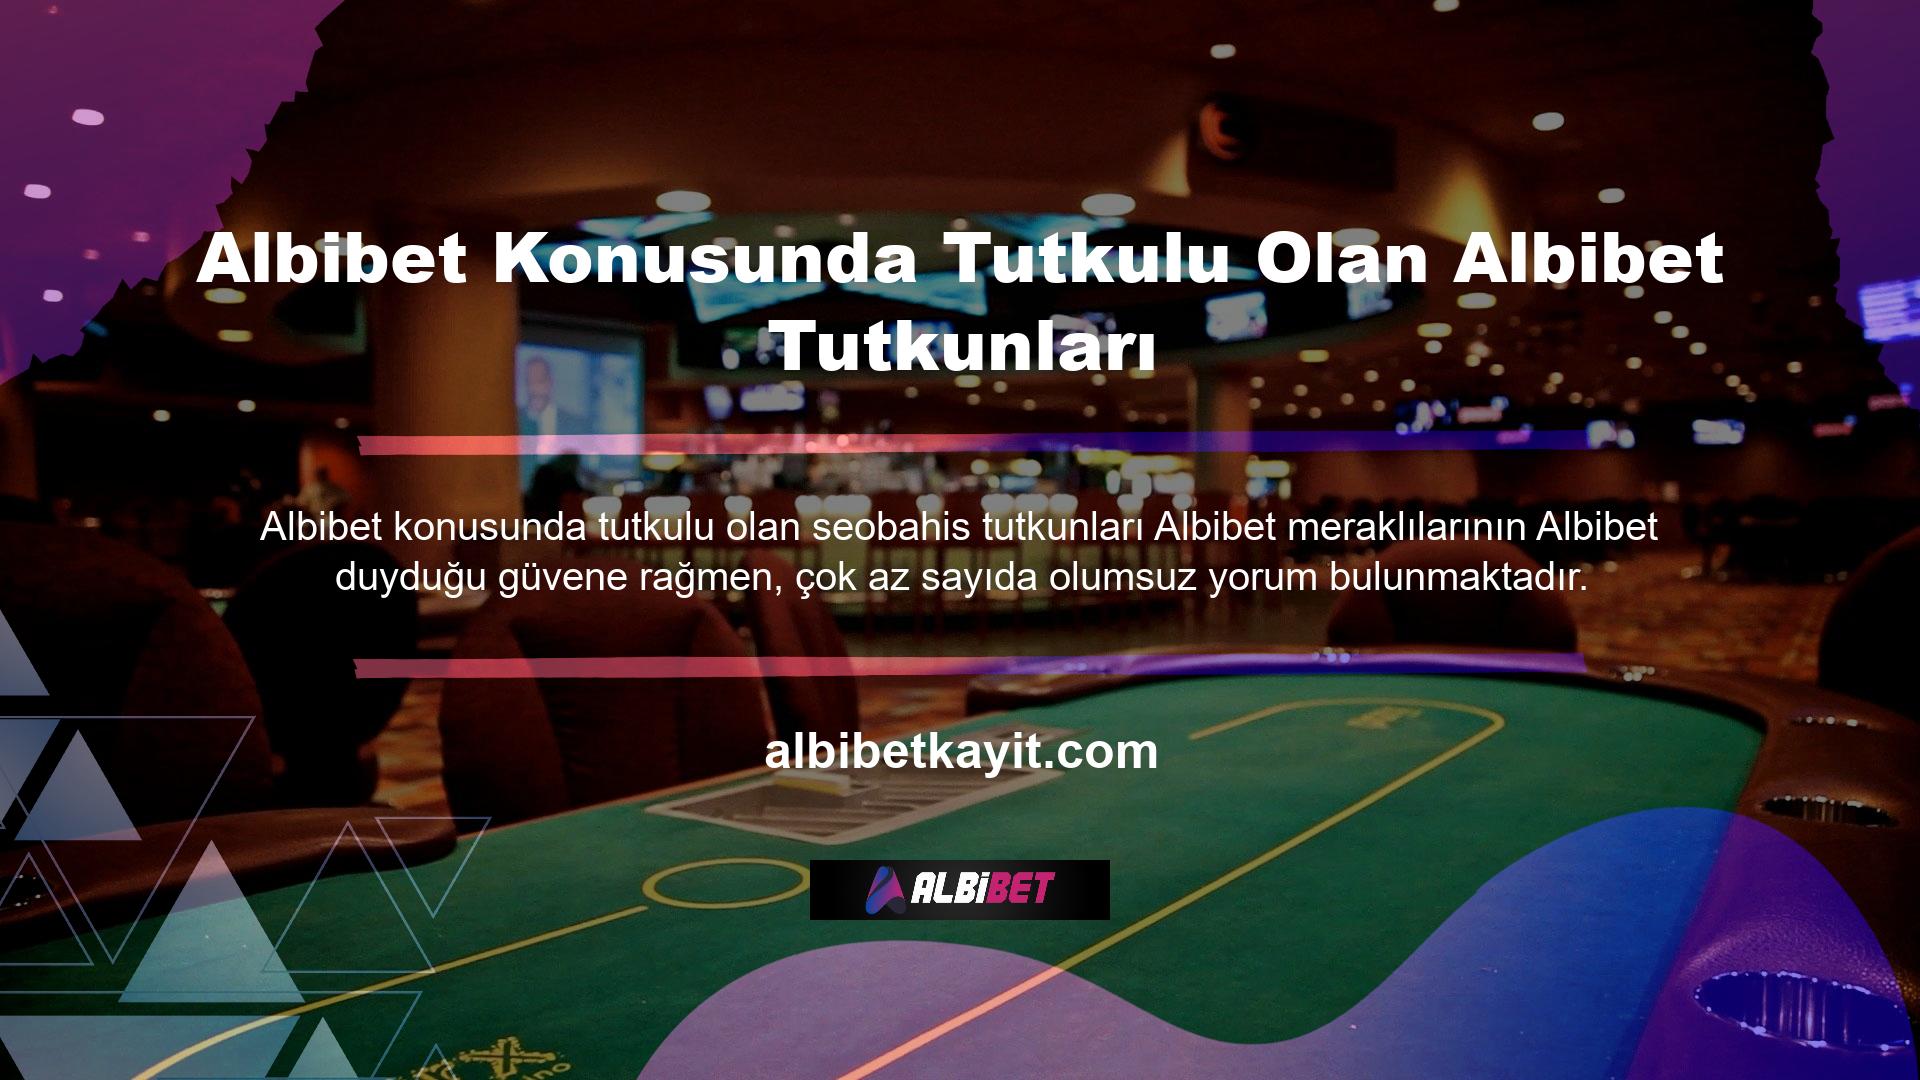 Albibet, müşterilerine canlı Albibet ve casino oyunları için çok çeşitli ödeme seçenekleri sunmakta ve sahip olduğu güvenlik önlemleri, ödeme işlemleri sırasında olası sorunların önüne geçmektedir